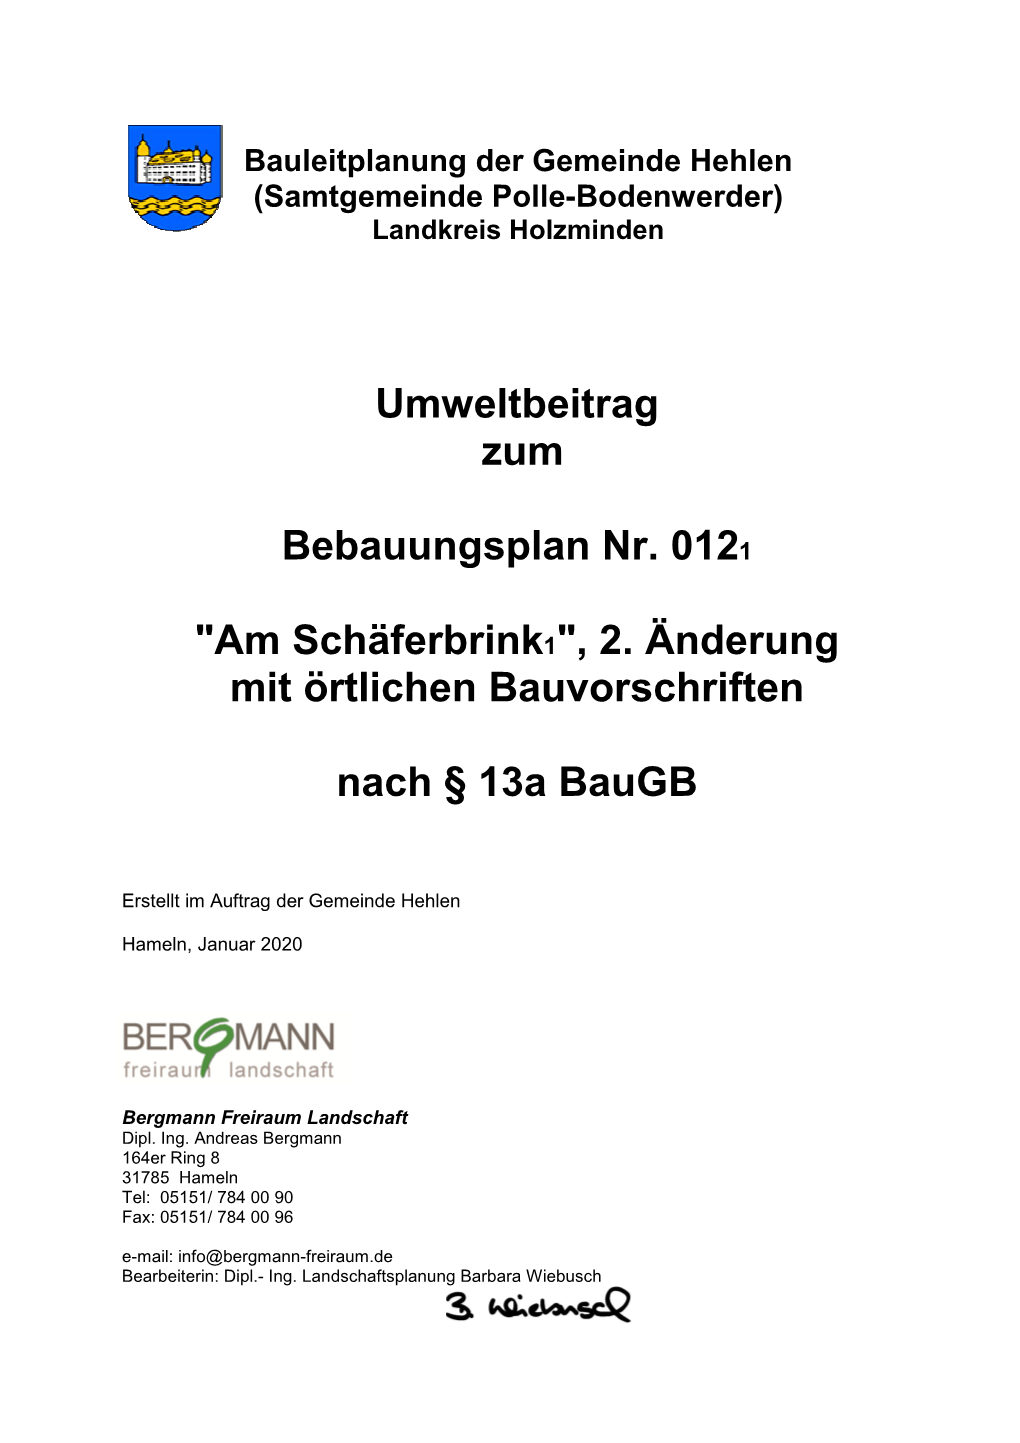 Umweltbeitrag Zum Bebauungsplan Nr. 0121 "Am Schäferbrink1"